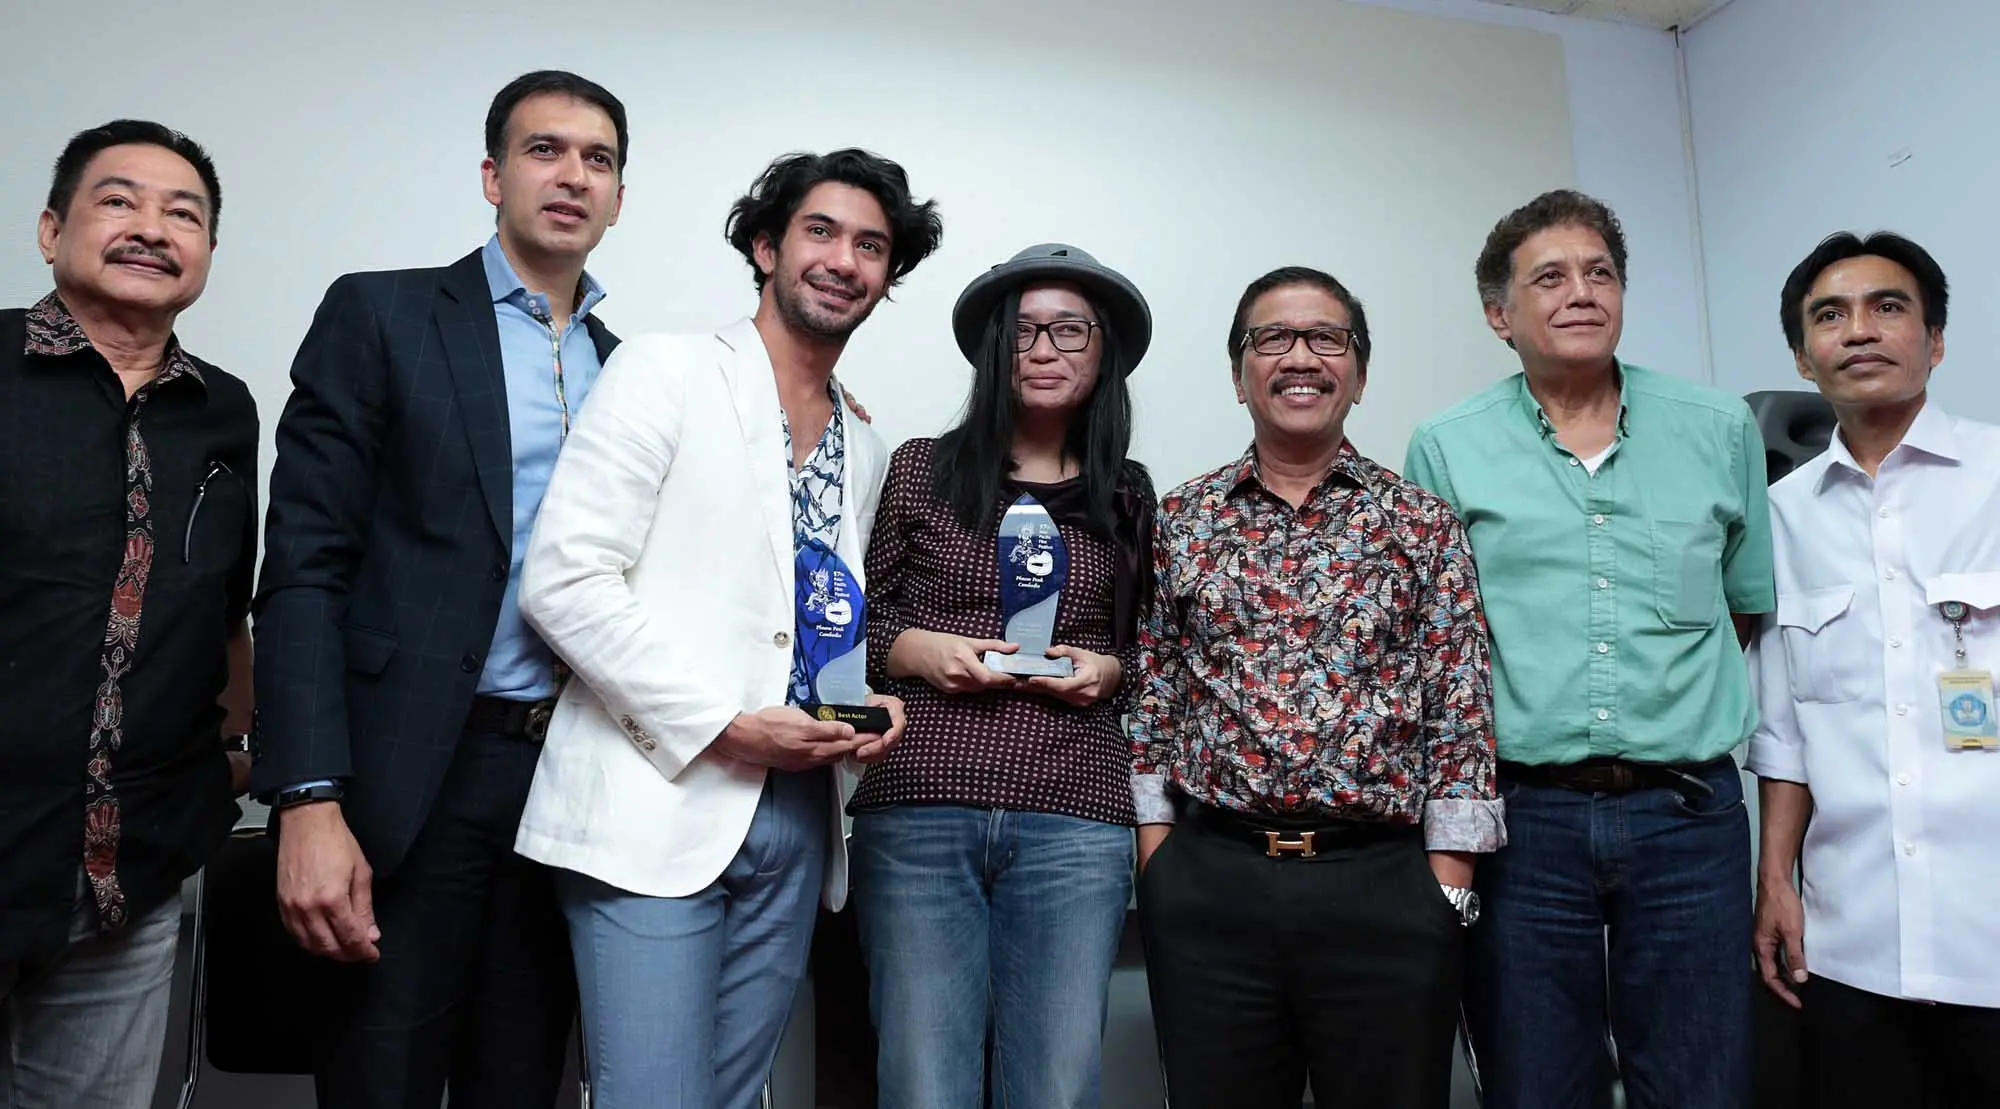 Atas pencapaiannya tersebut, Reza Rahadian berharap kemenangannya di kencah internasional menjadi langkah awal untuk membuka kesempatan bagi para aktor dan artis Indonesia lainnya. (Deki Prayoga/Bintang.com)